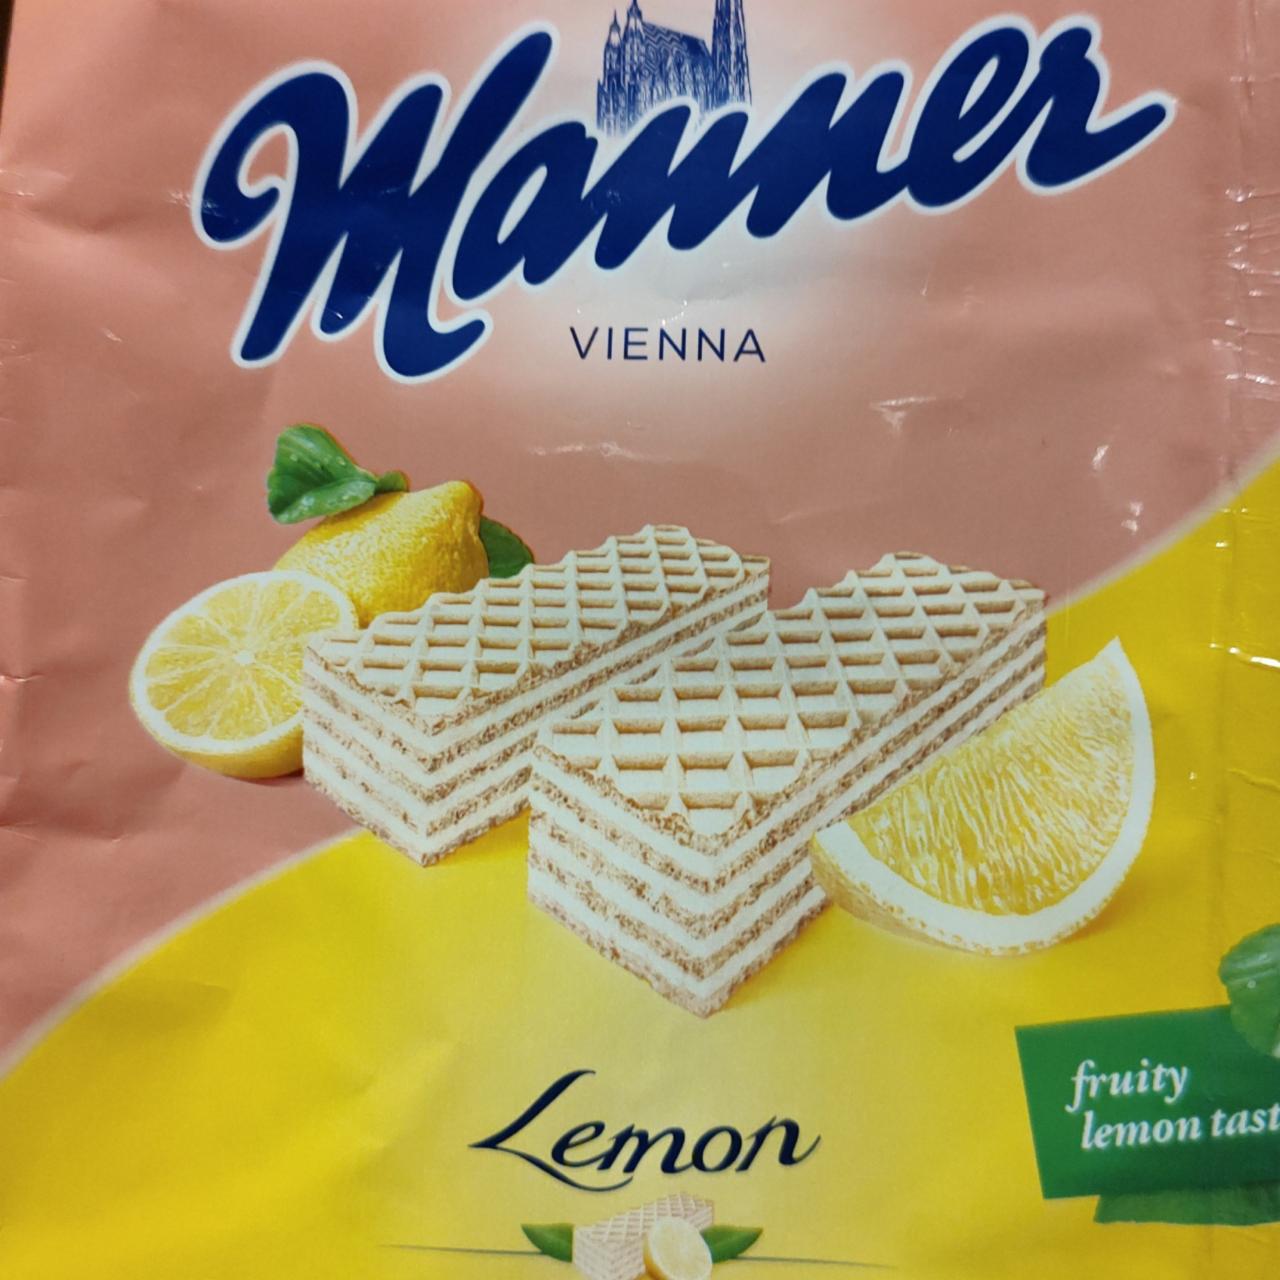 Fotografie - Manner Vienna Lemon